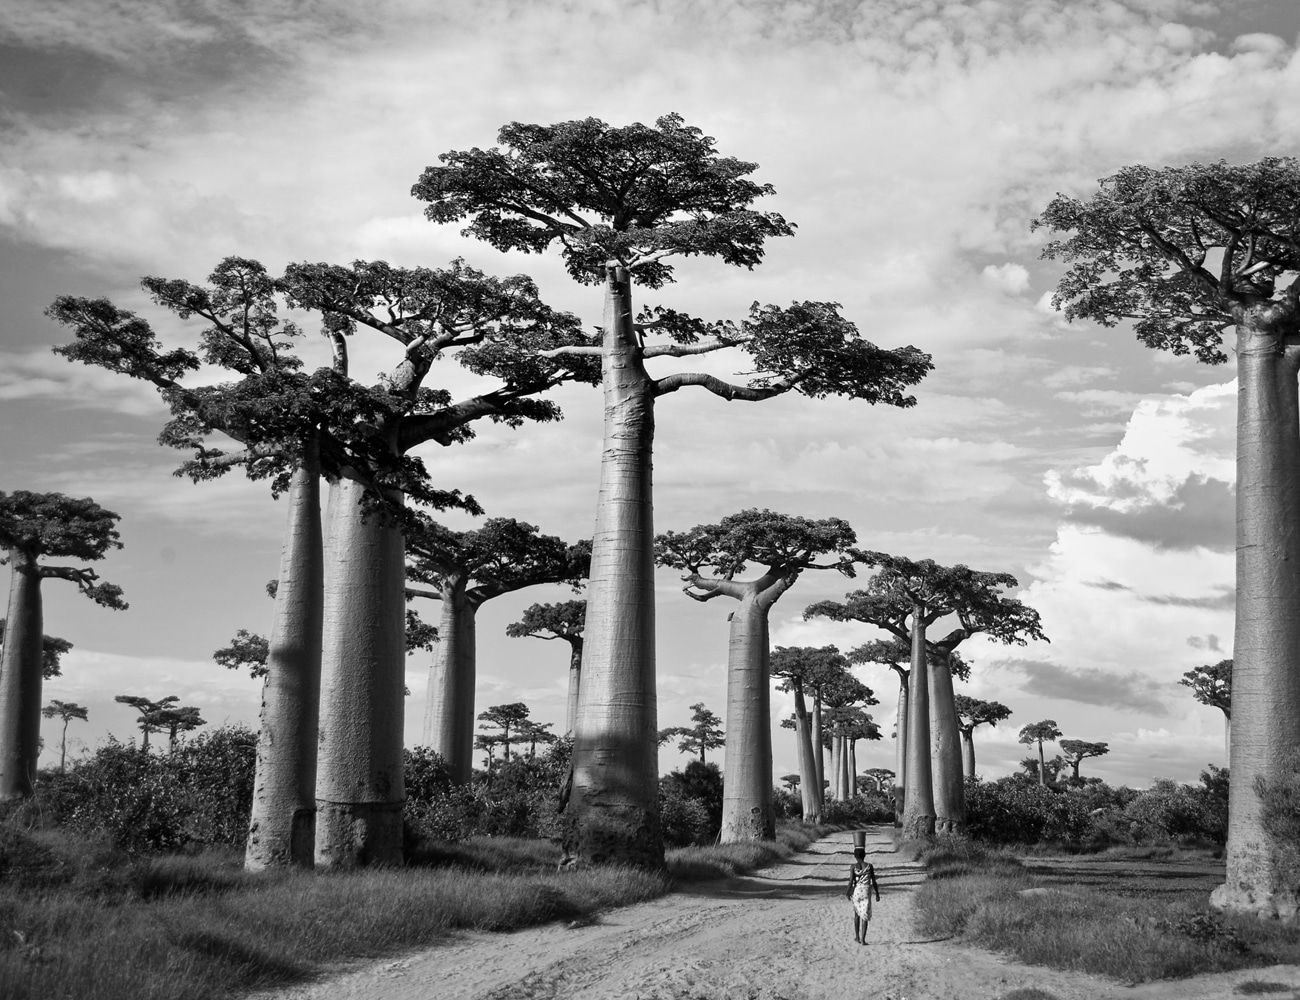 Baobab Tress at Tarangire National Park